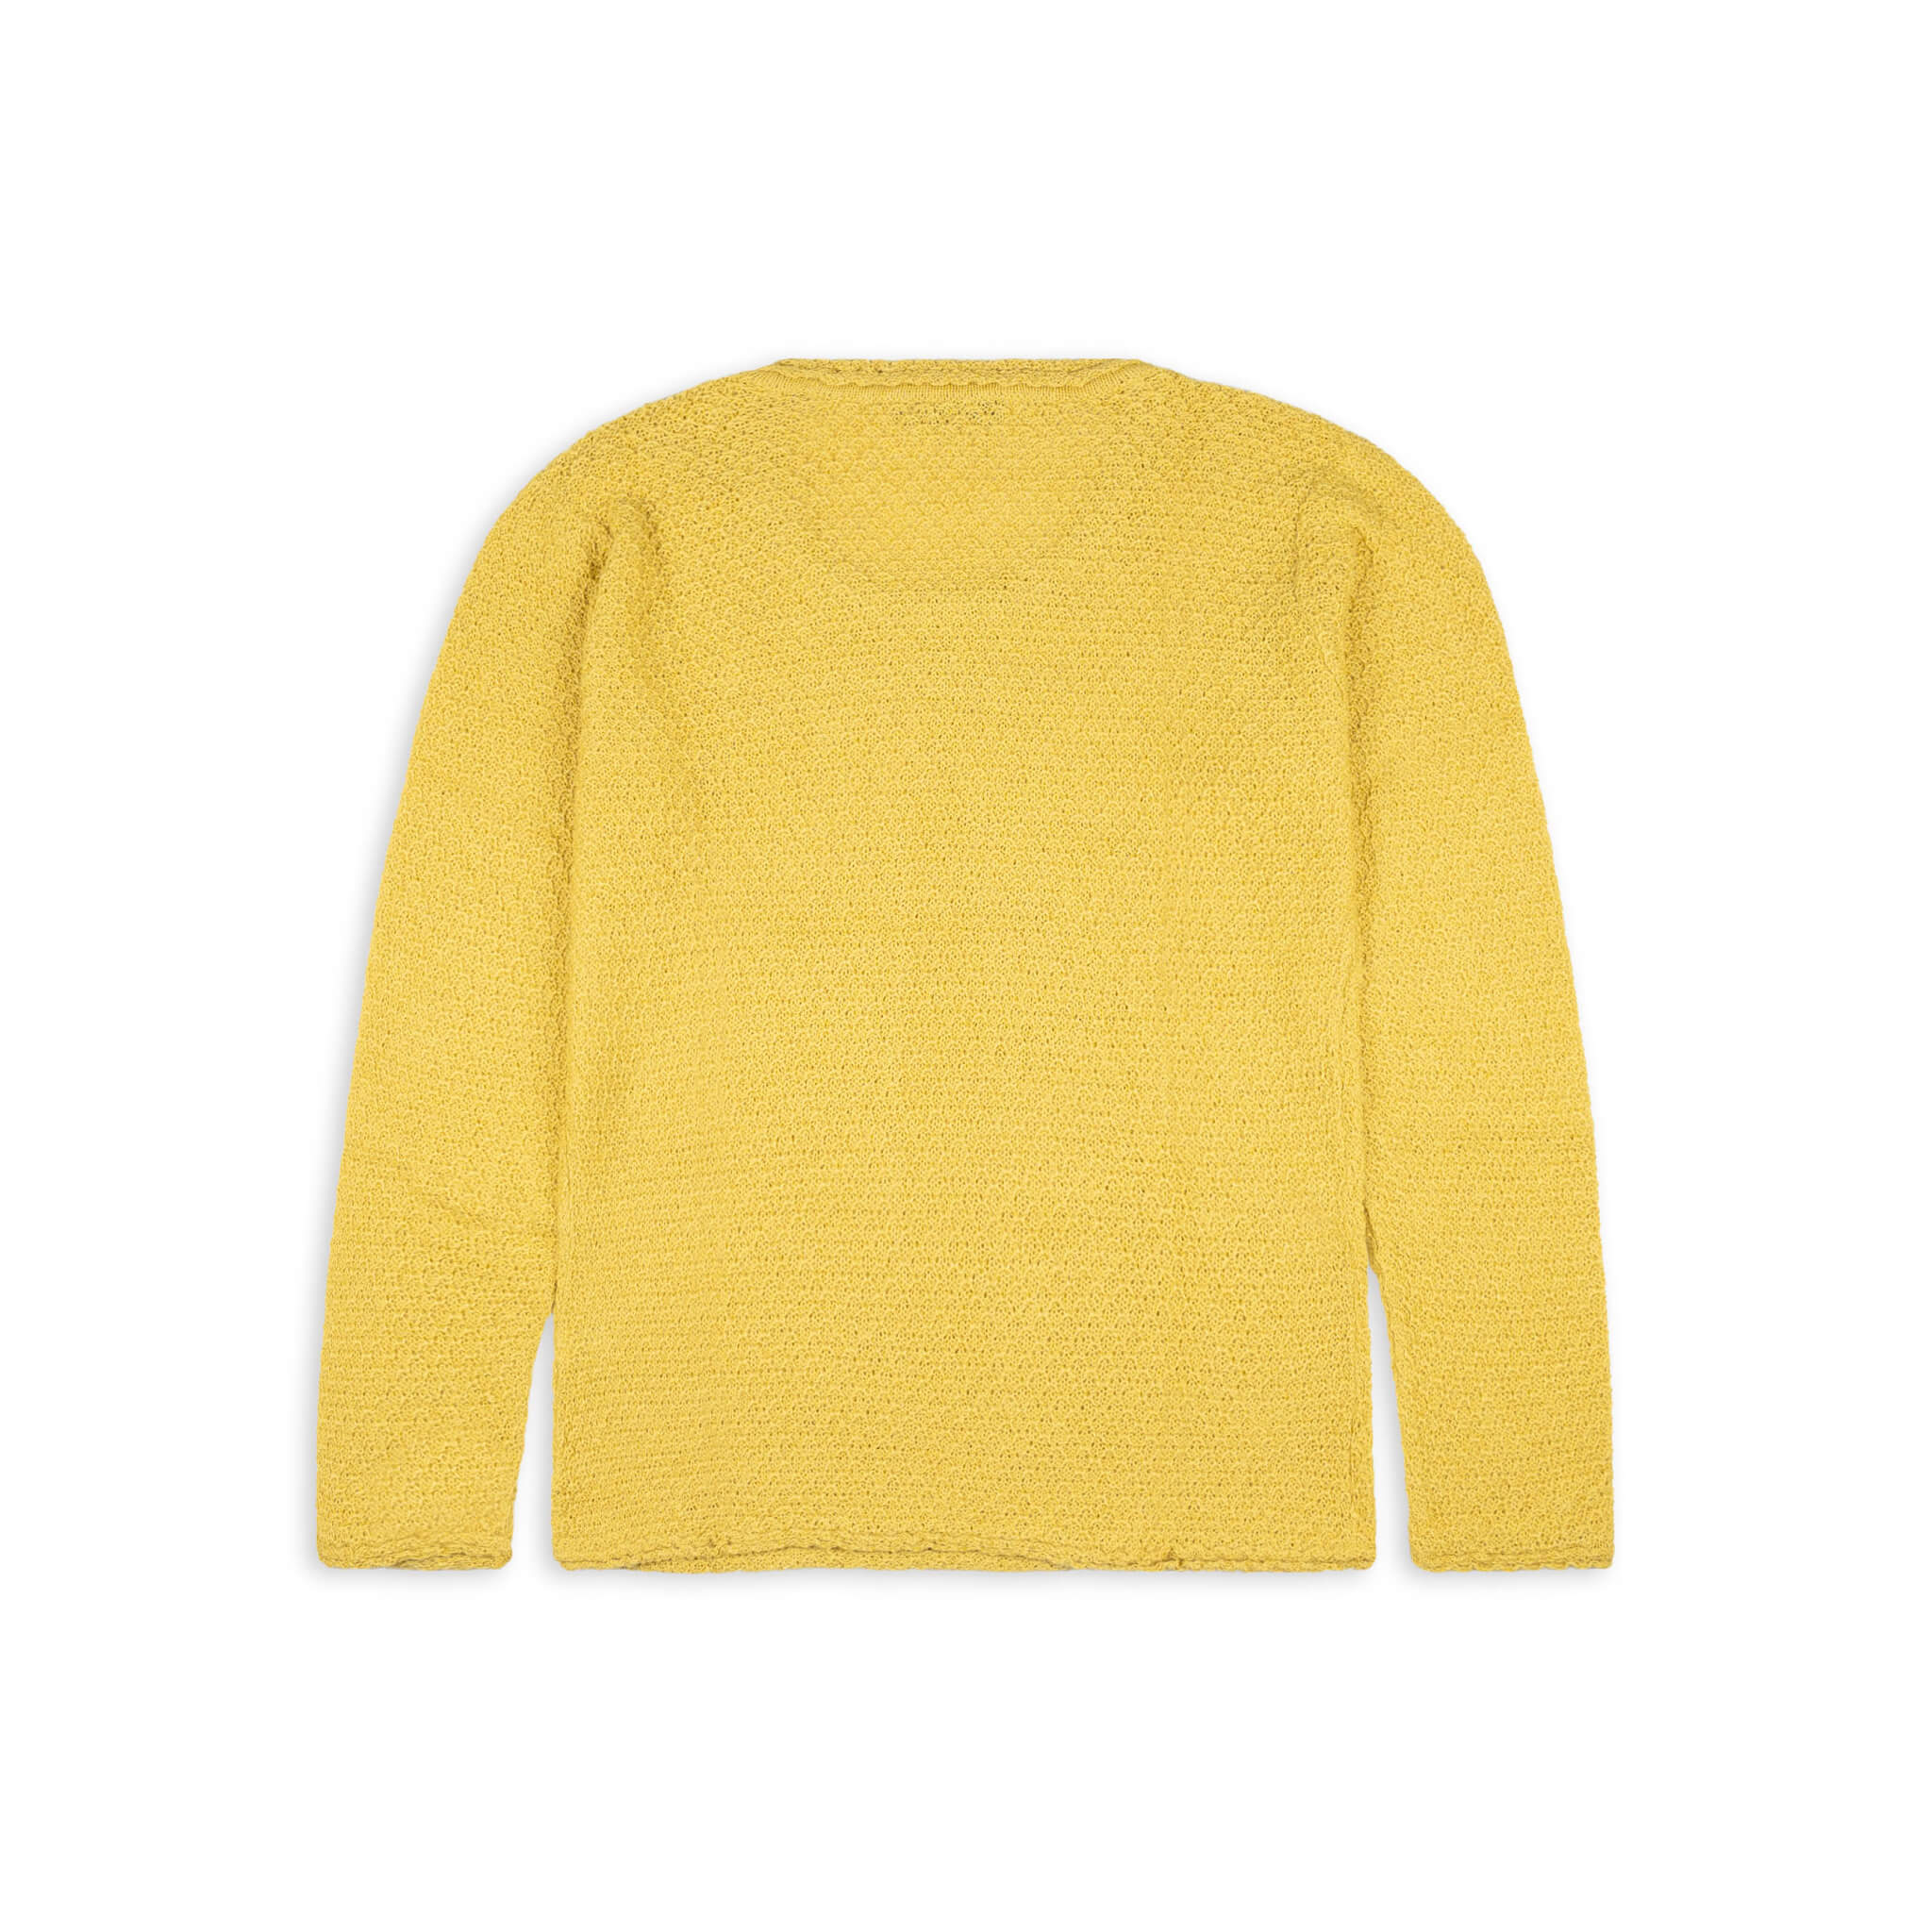 SISA Alpaka Pullover für Damen von Alpakin in gelb von hinten